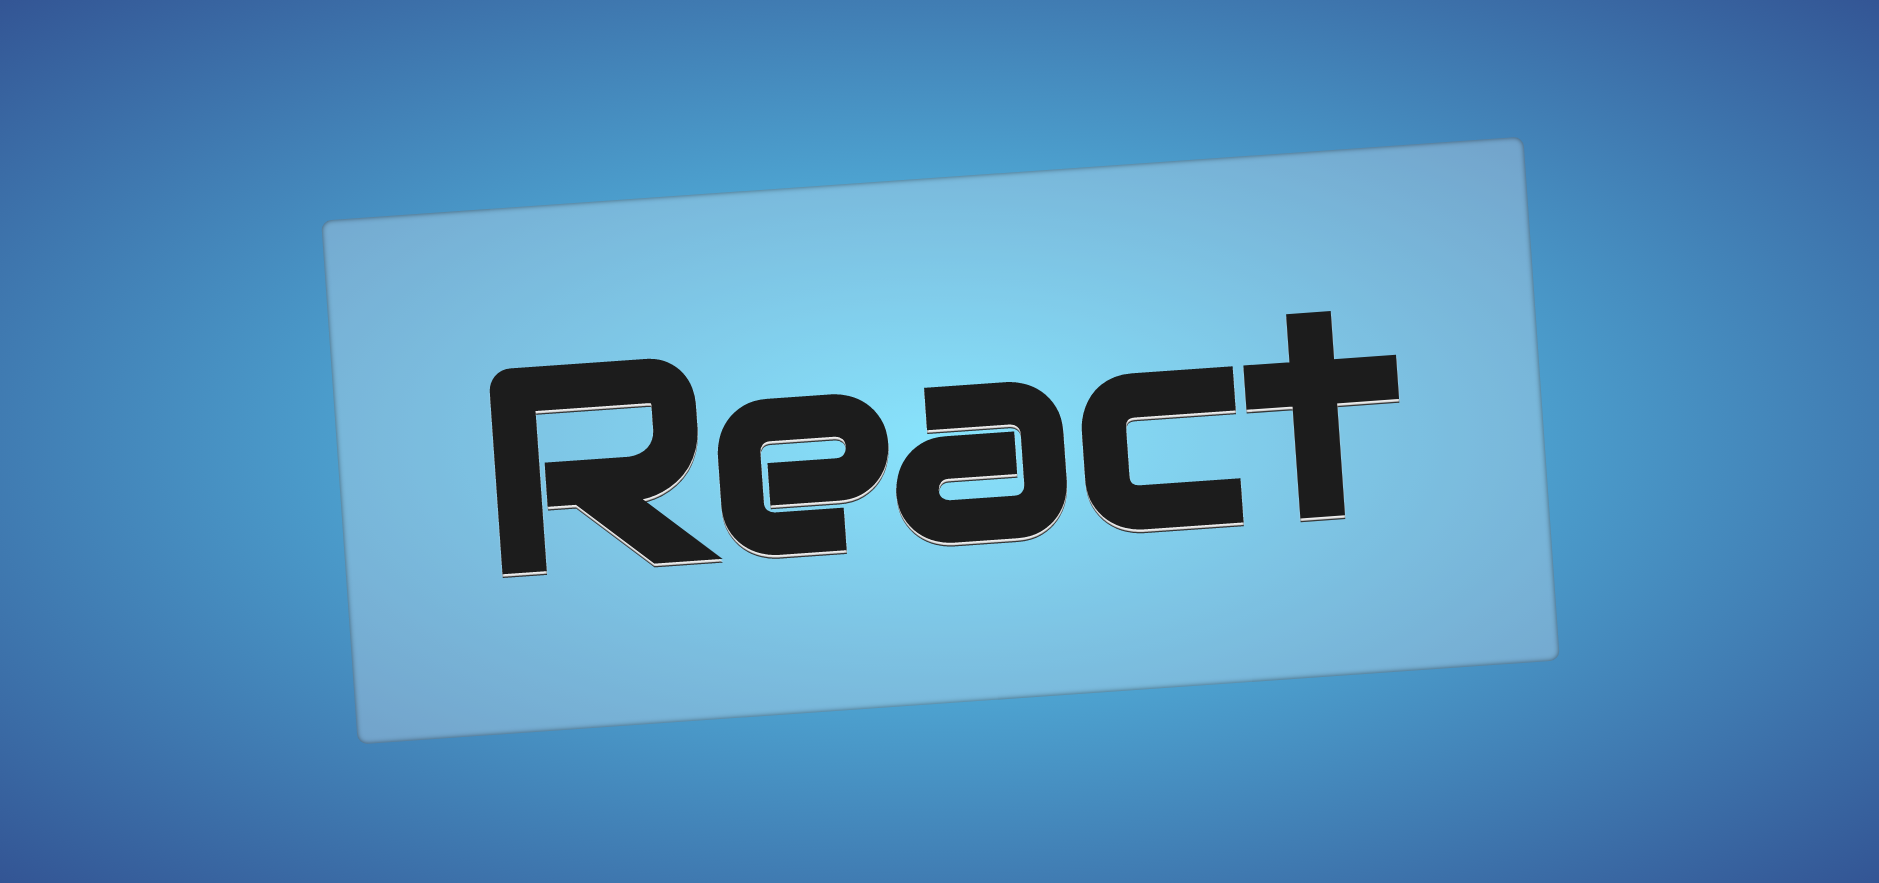 Разрабатываем чат на React с использованием Socket.IO